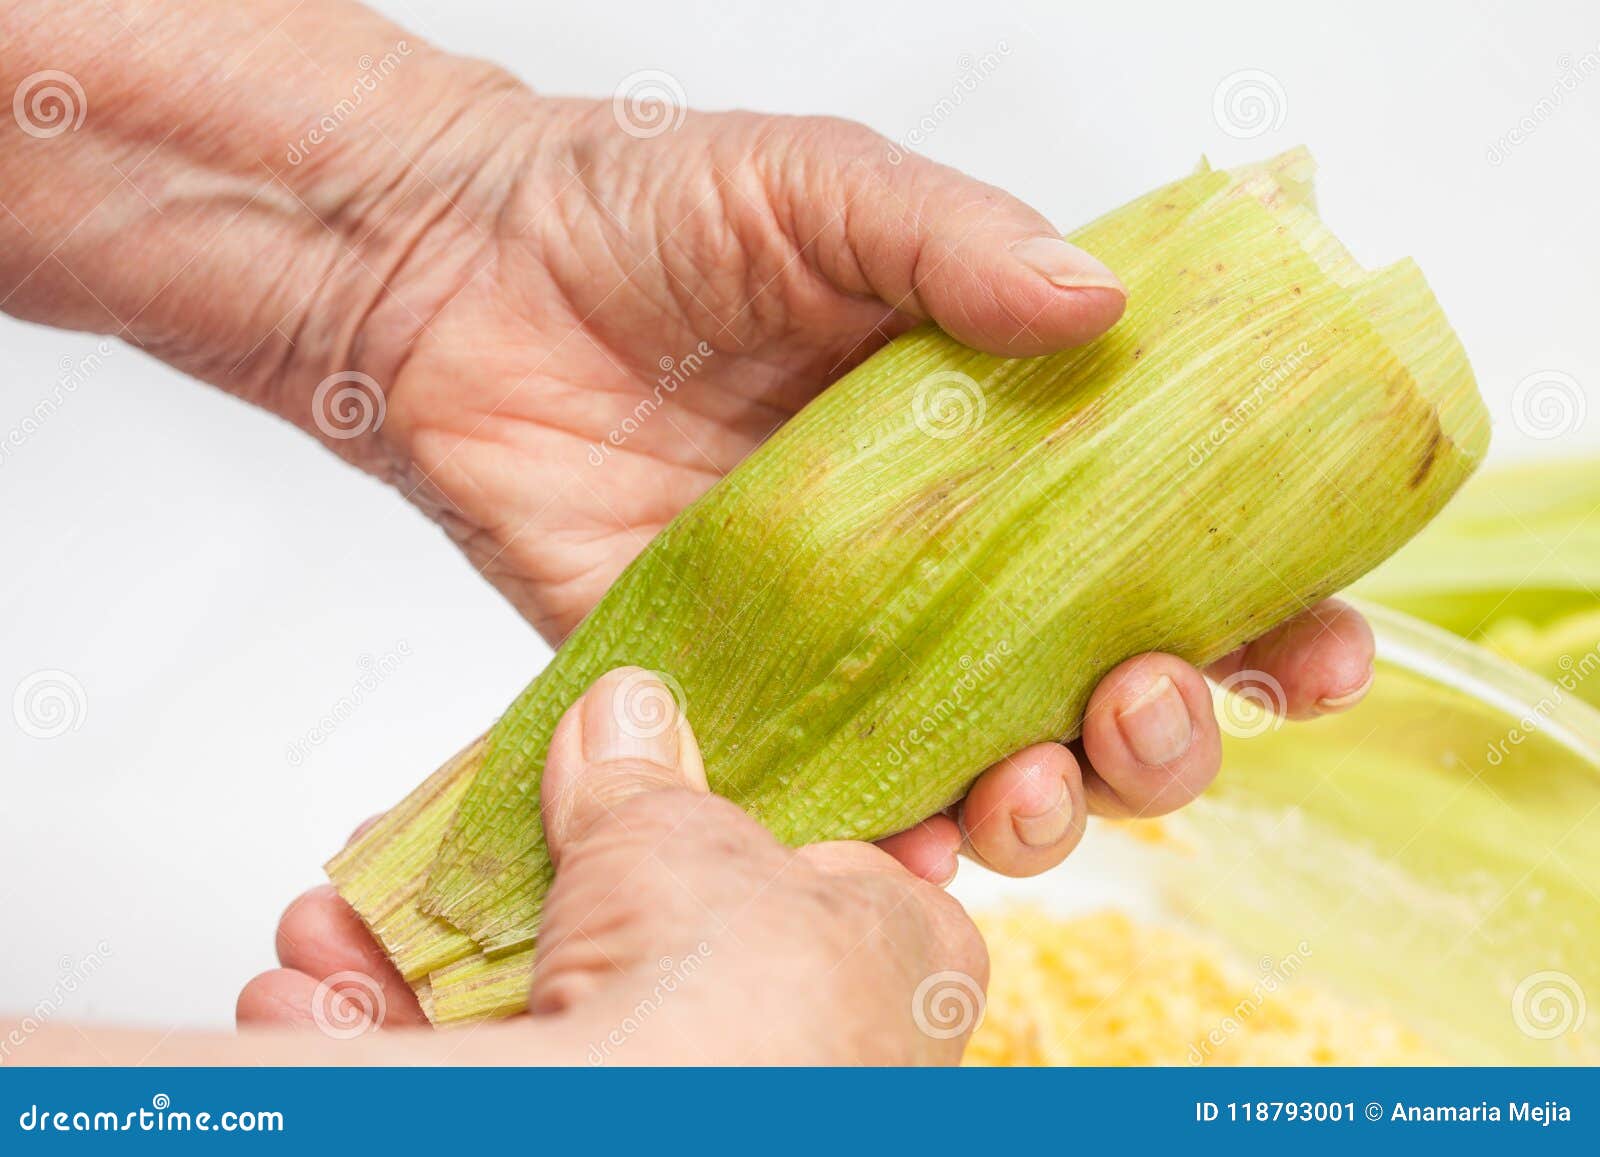 colombian sweet corn wrap preparation